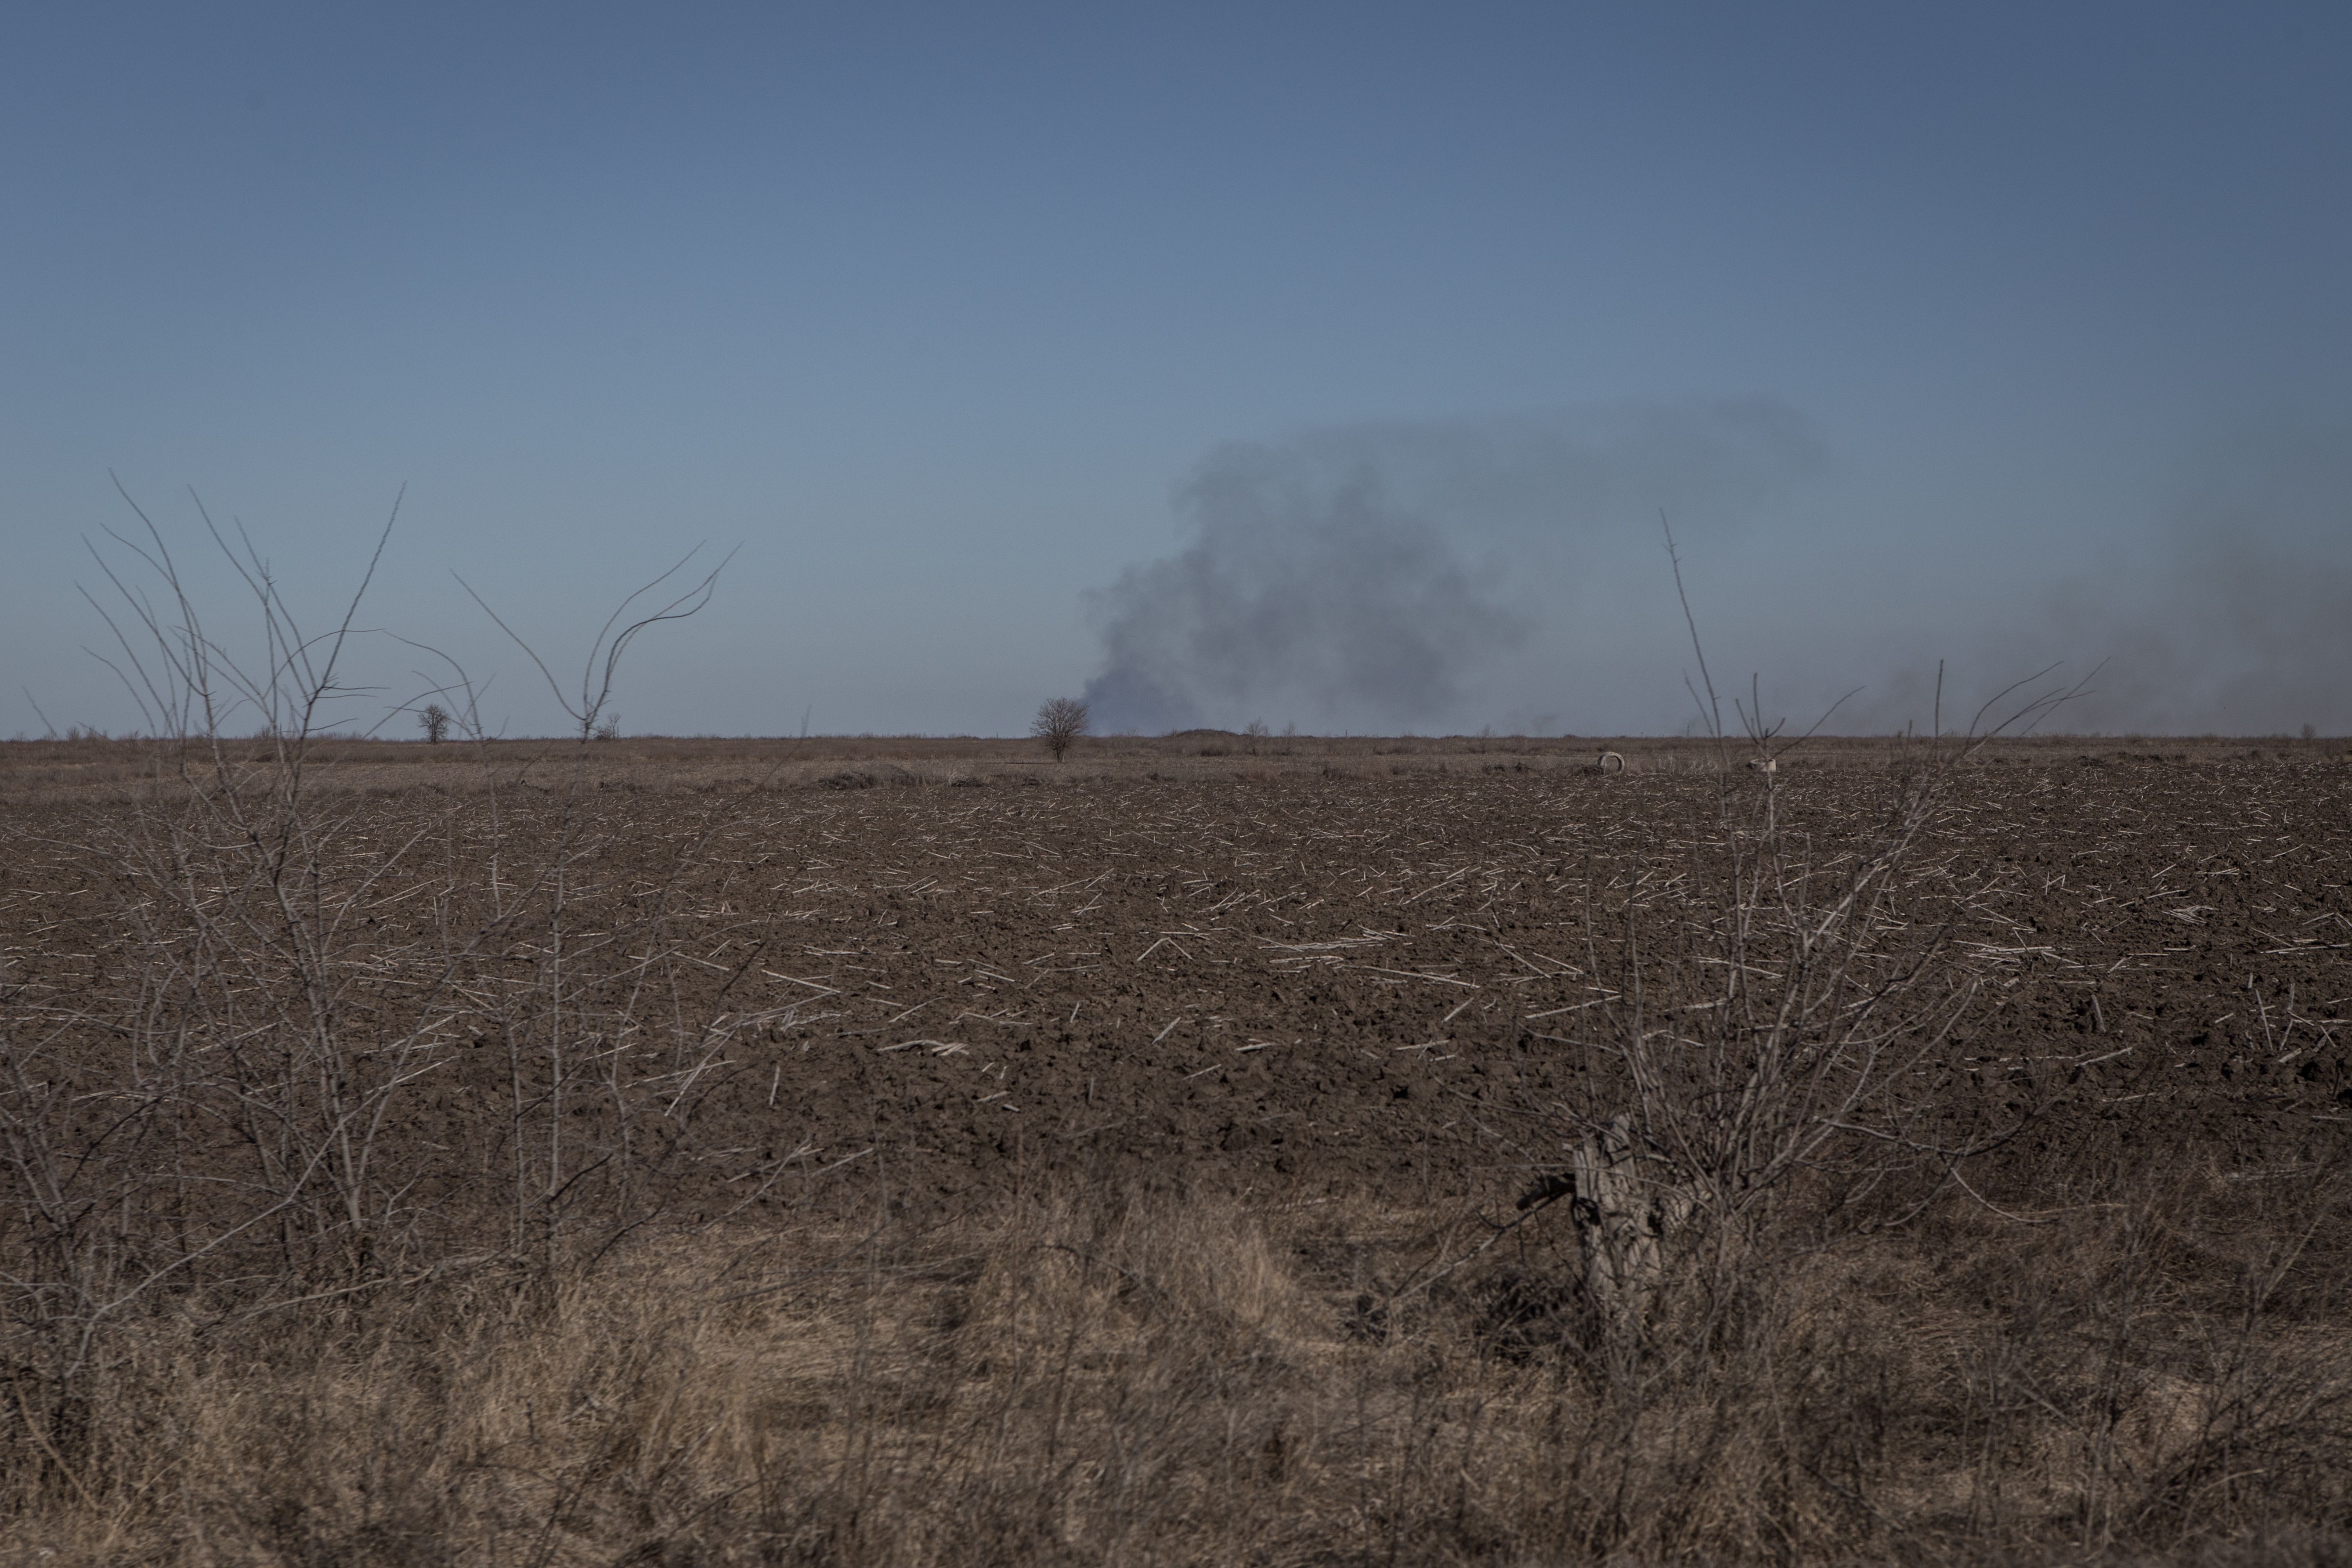 Am 22. März steigt außerhalb der Stadt Saporischschja in der Ukraine auf einem Feld Rauch auf